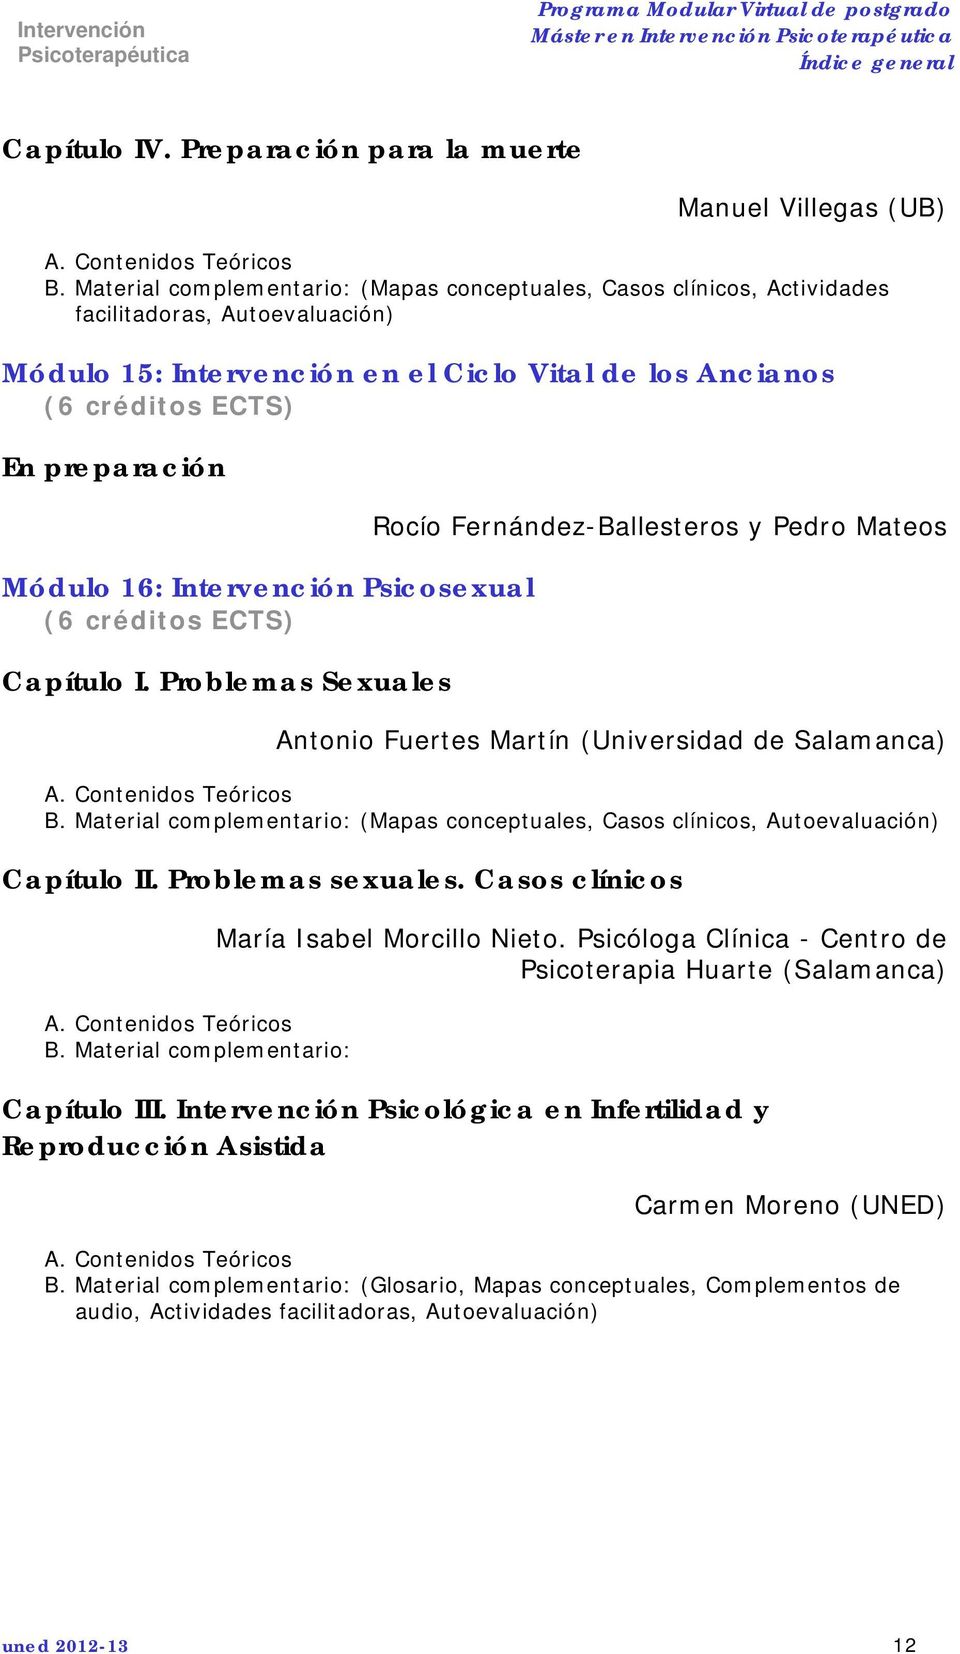 Problemas Sexuales Rocío Fernández-Ballesteros y Pedro Mateos Antonio Fuertes Martín (Universidad de Salamanca) B.